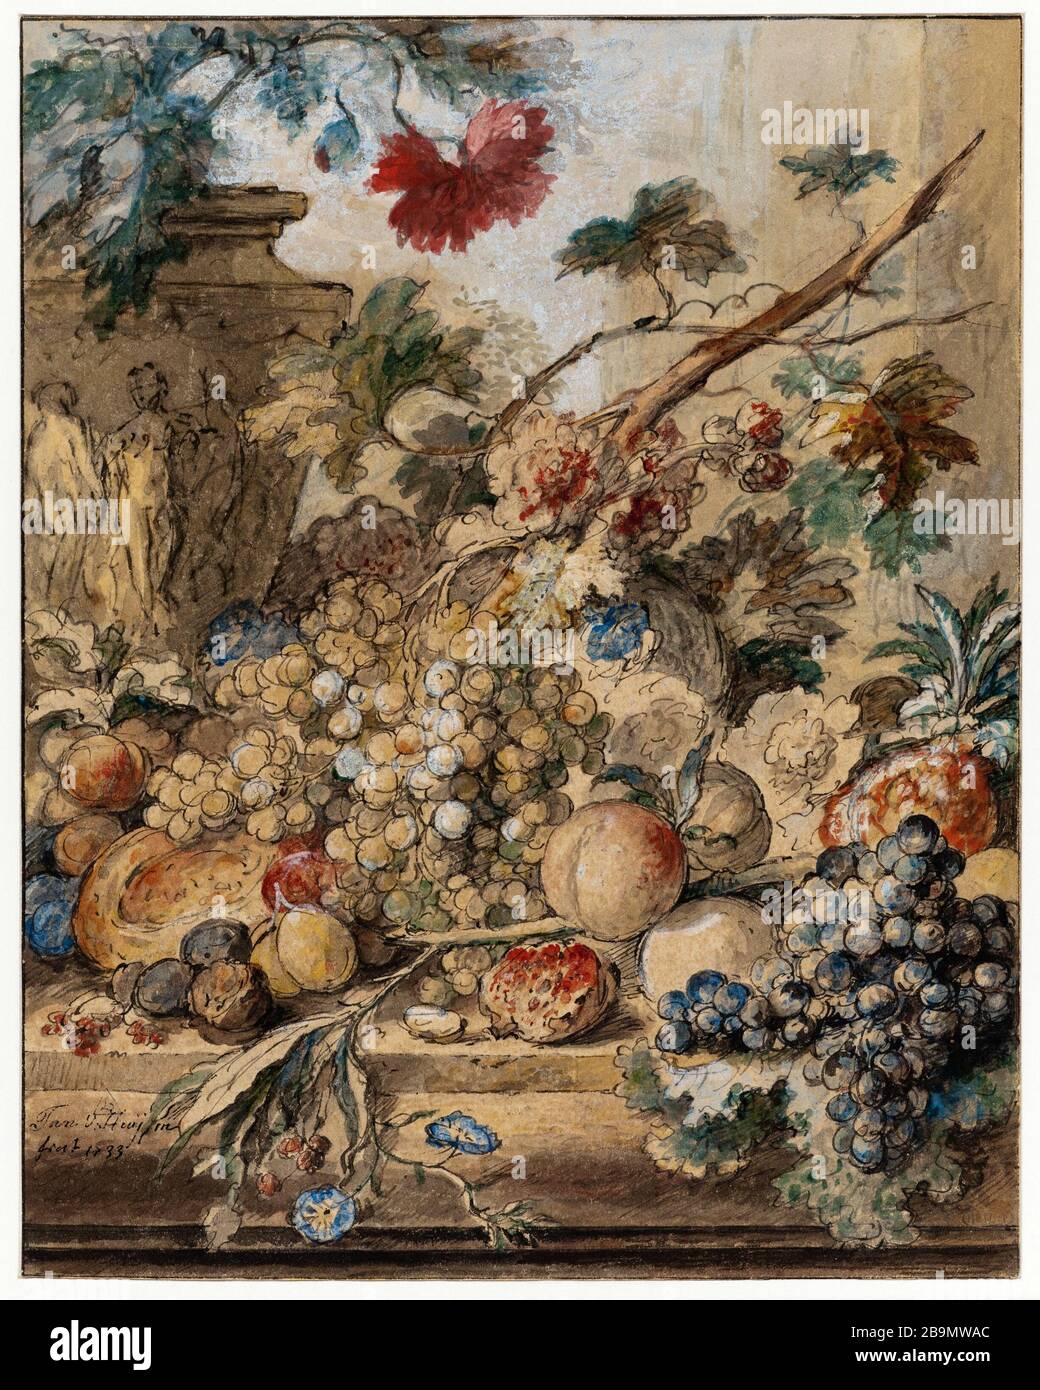 ETALAGE VASE WITH FRUIT LEFT Jan van Huysum (1682-1749). "Etalage de fruits avec vase à gauche". Plume et aquarelle sur papier. Musée des Beaux-Arts de la Ville de Paris, Petit Palais. Stock Photo